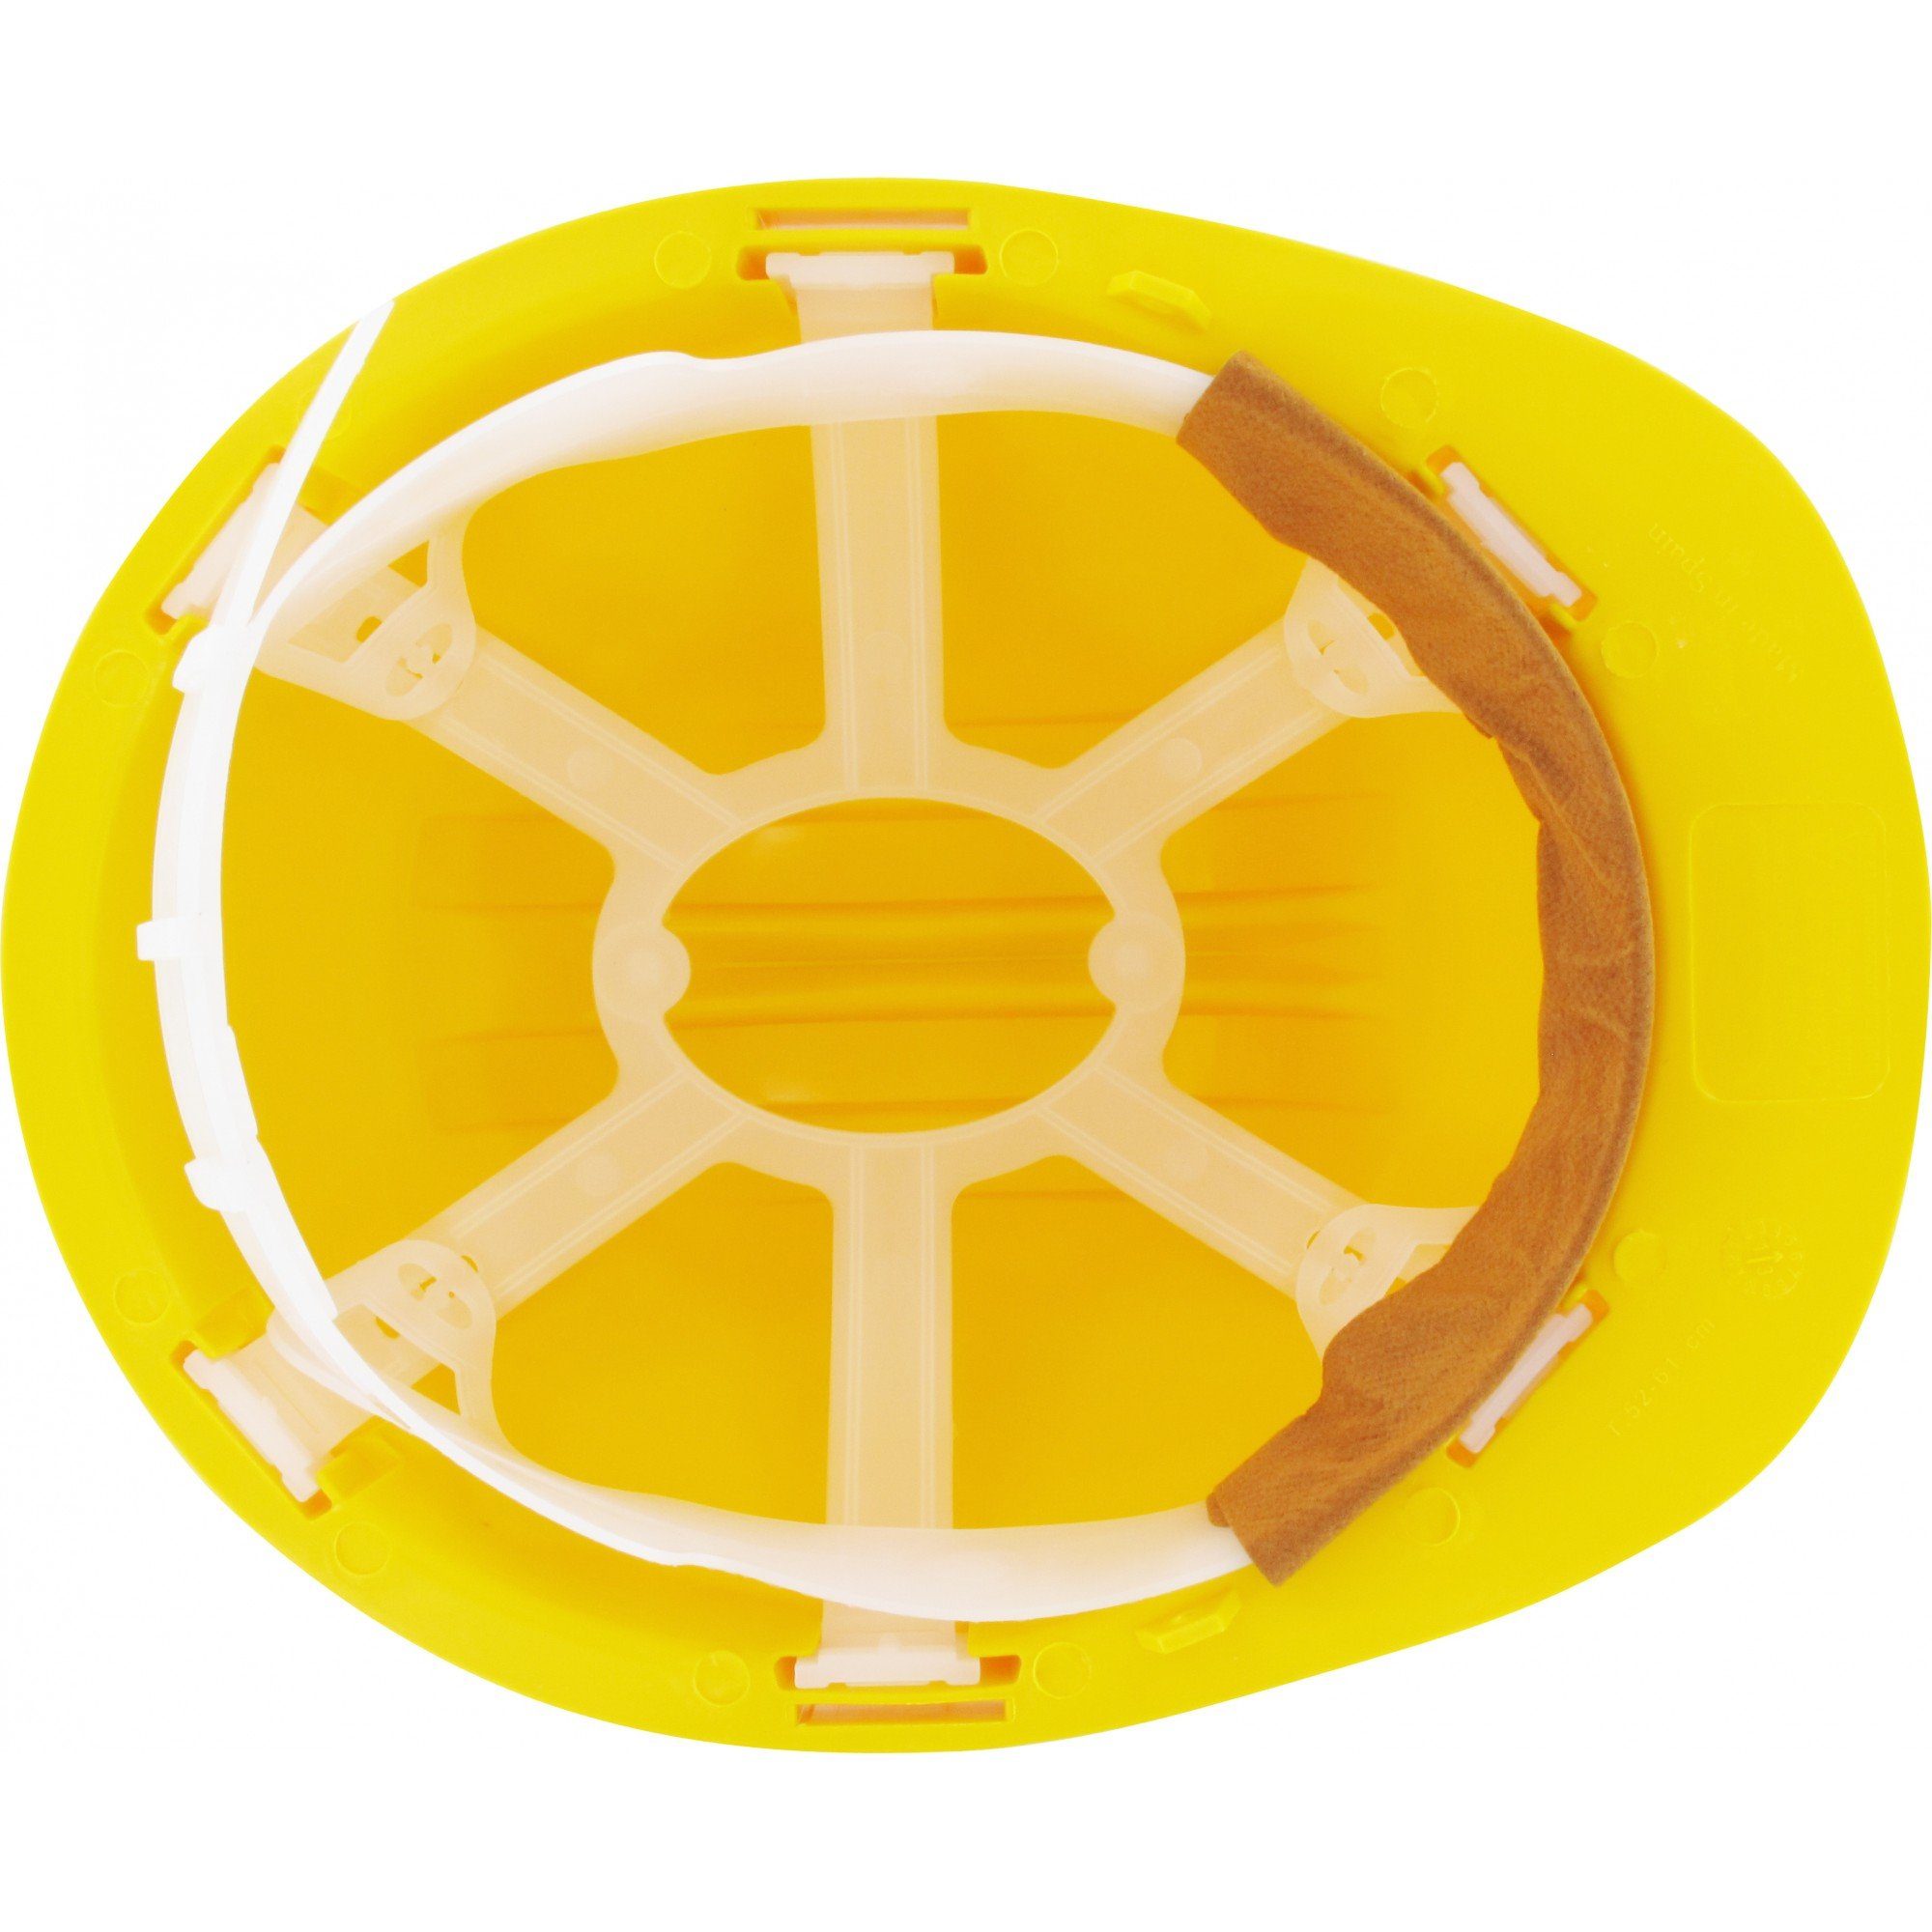 TRIZERATOP Kopfschutz Bauschutzhelm - DIN gelb 397 Punkt 6 EN 